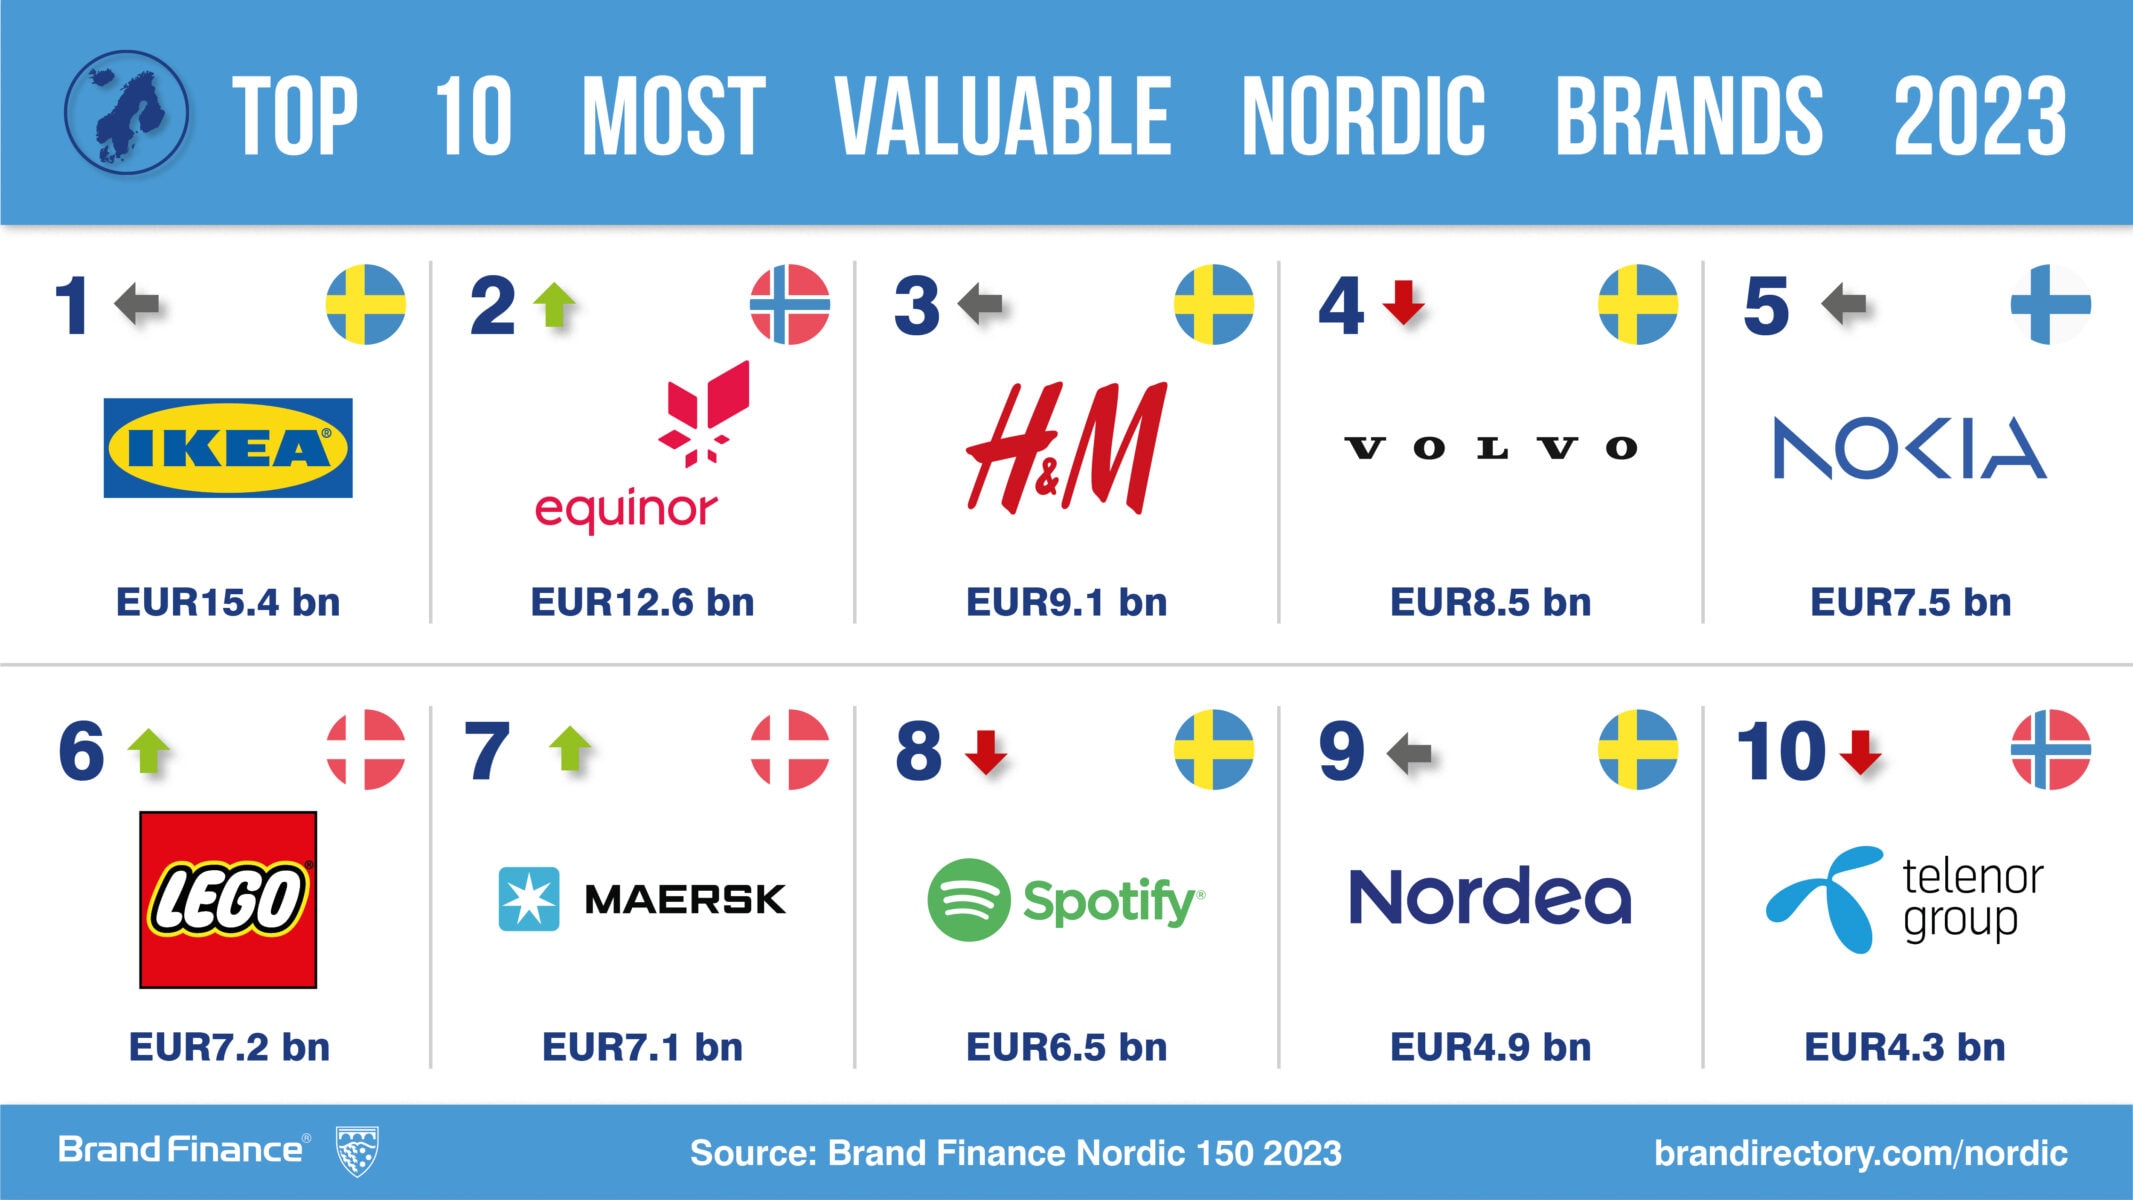 Sweden's Top Brands Lose Over SEK 100 Billion in Brand Value